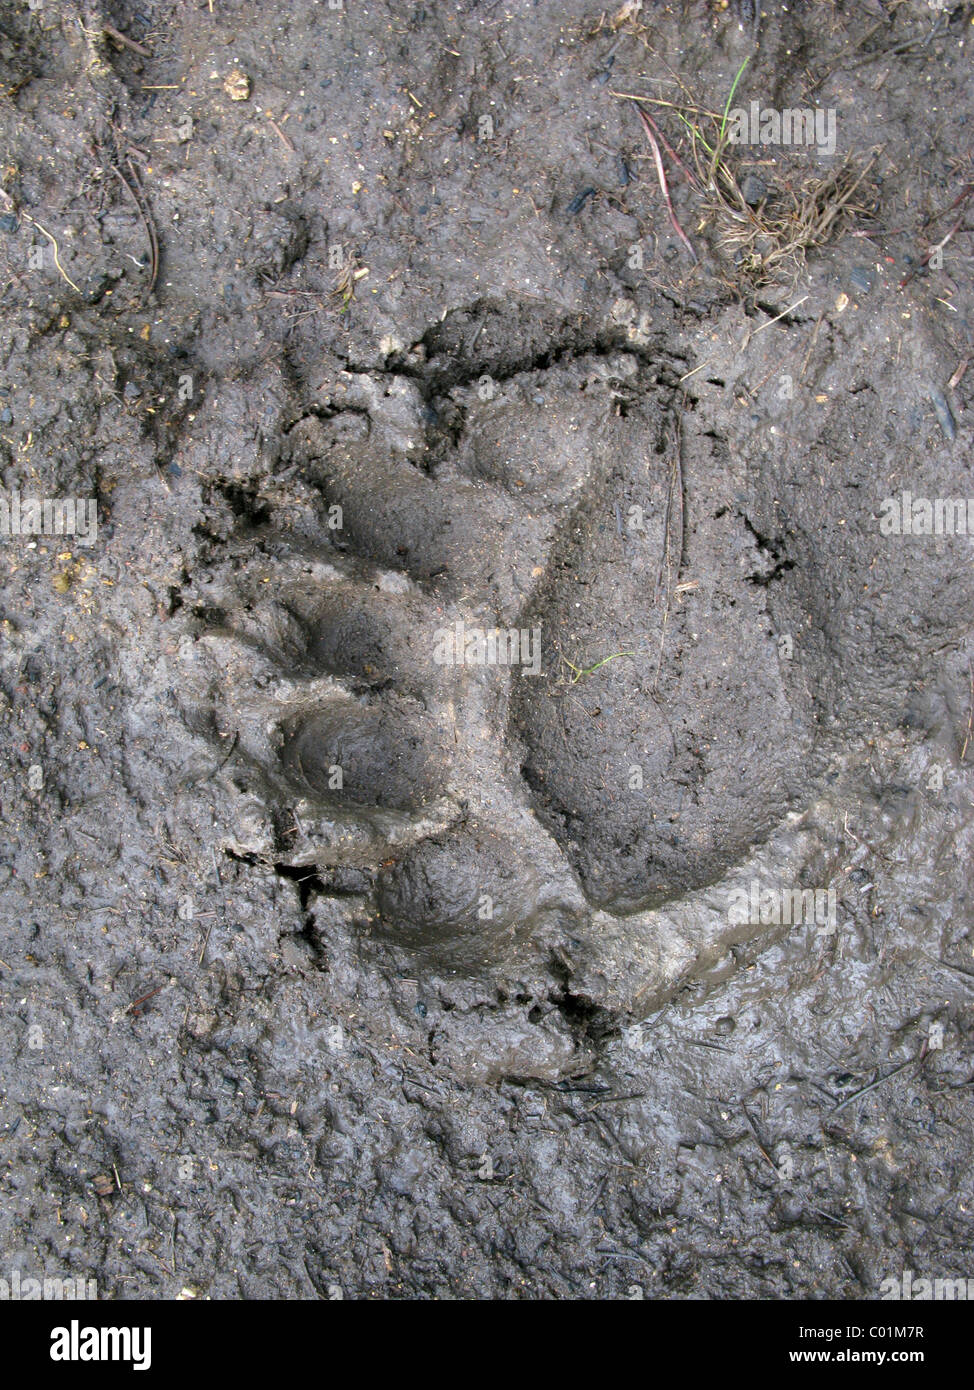 Footprint, American black bear (Ursus americanus), il Parco Nazionale di Yellowstone, Wyoming USA, America del Nord Foto Stock